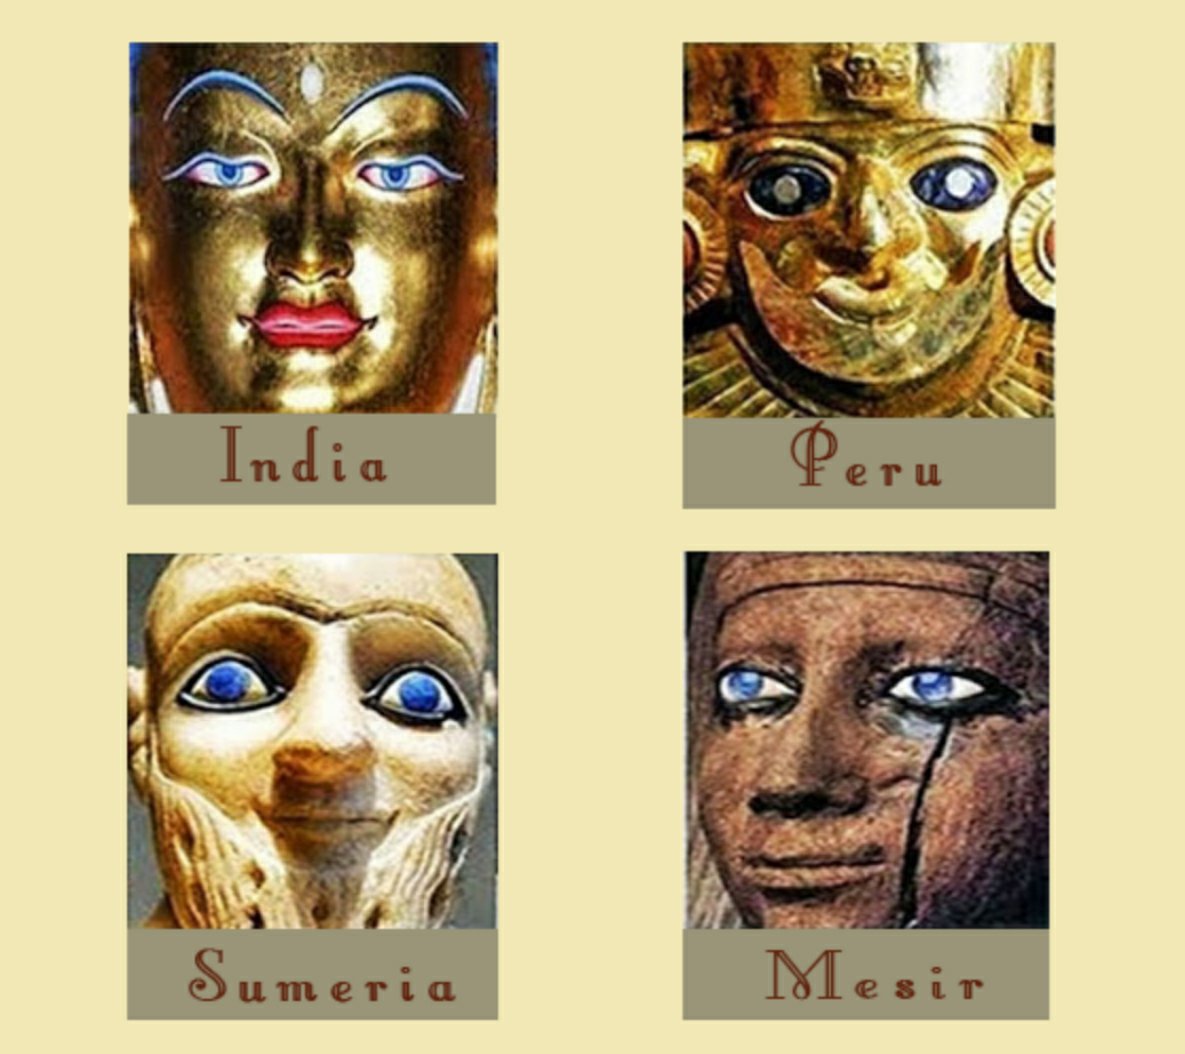 Många forntida civilisationer avbildade varelser med blå ögon.